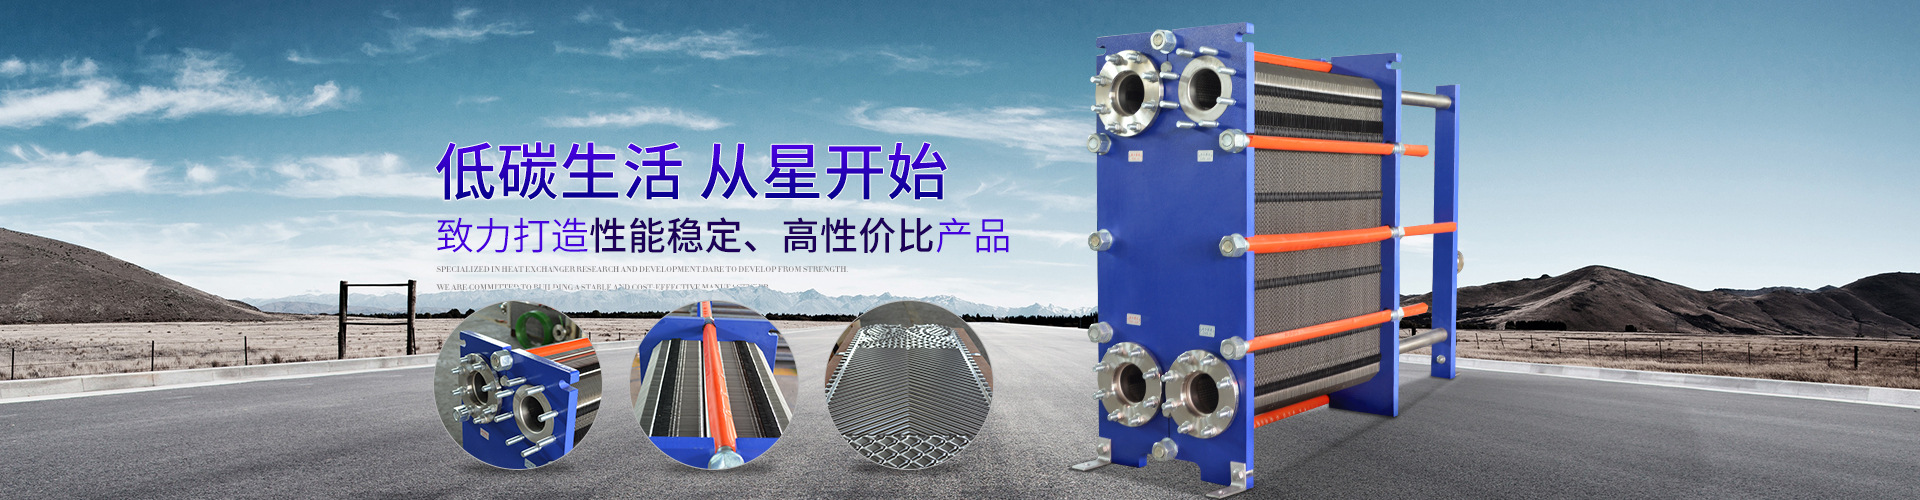 上海AG8服务亚洲化工设备有限公司